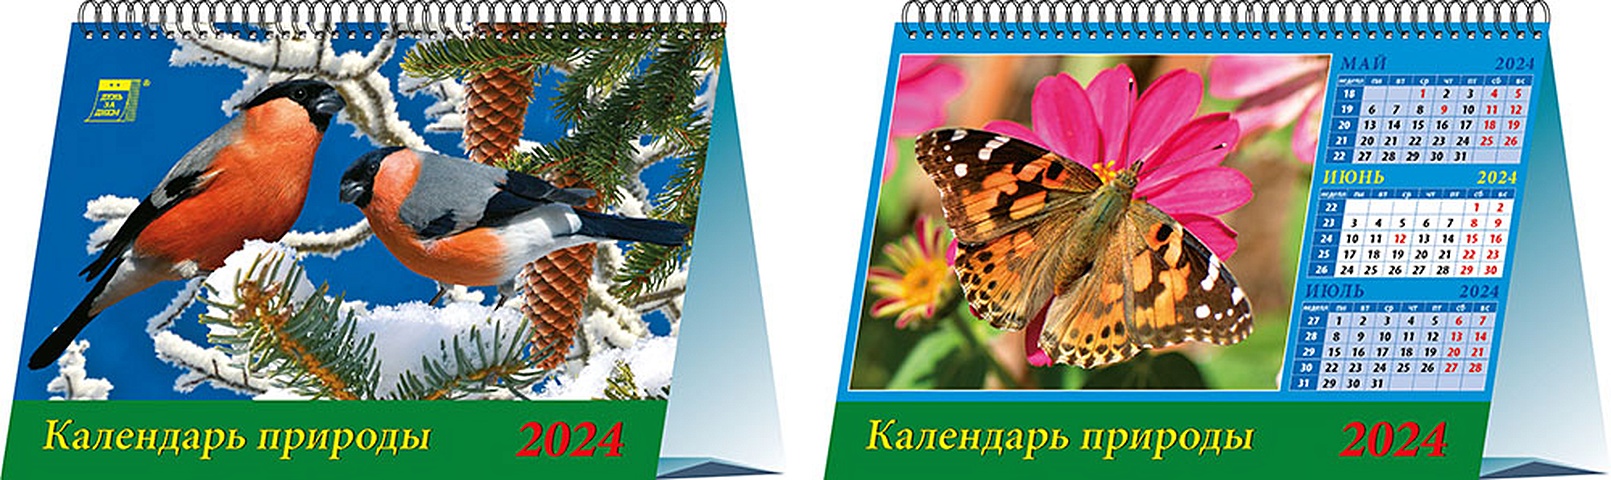 Календарь 2024г 200*140 Календарь природы настольный, домик сочиняй мечты календарь домик 2024 год с гномиками